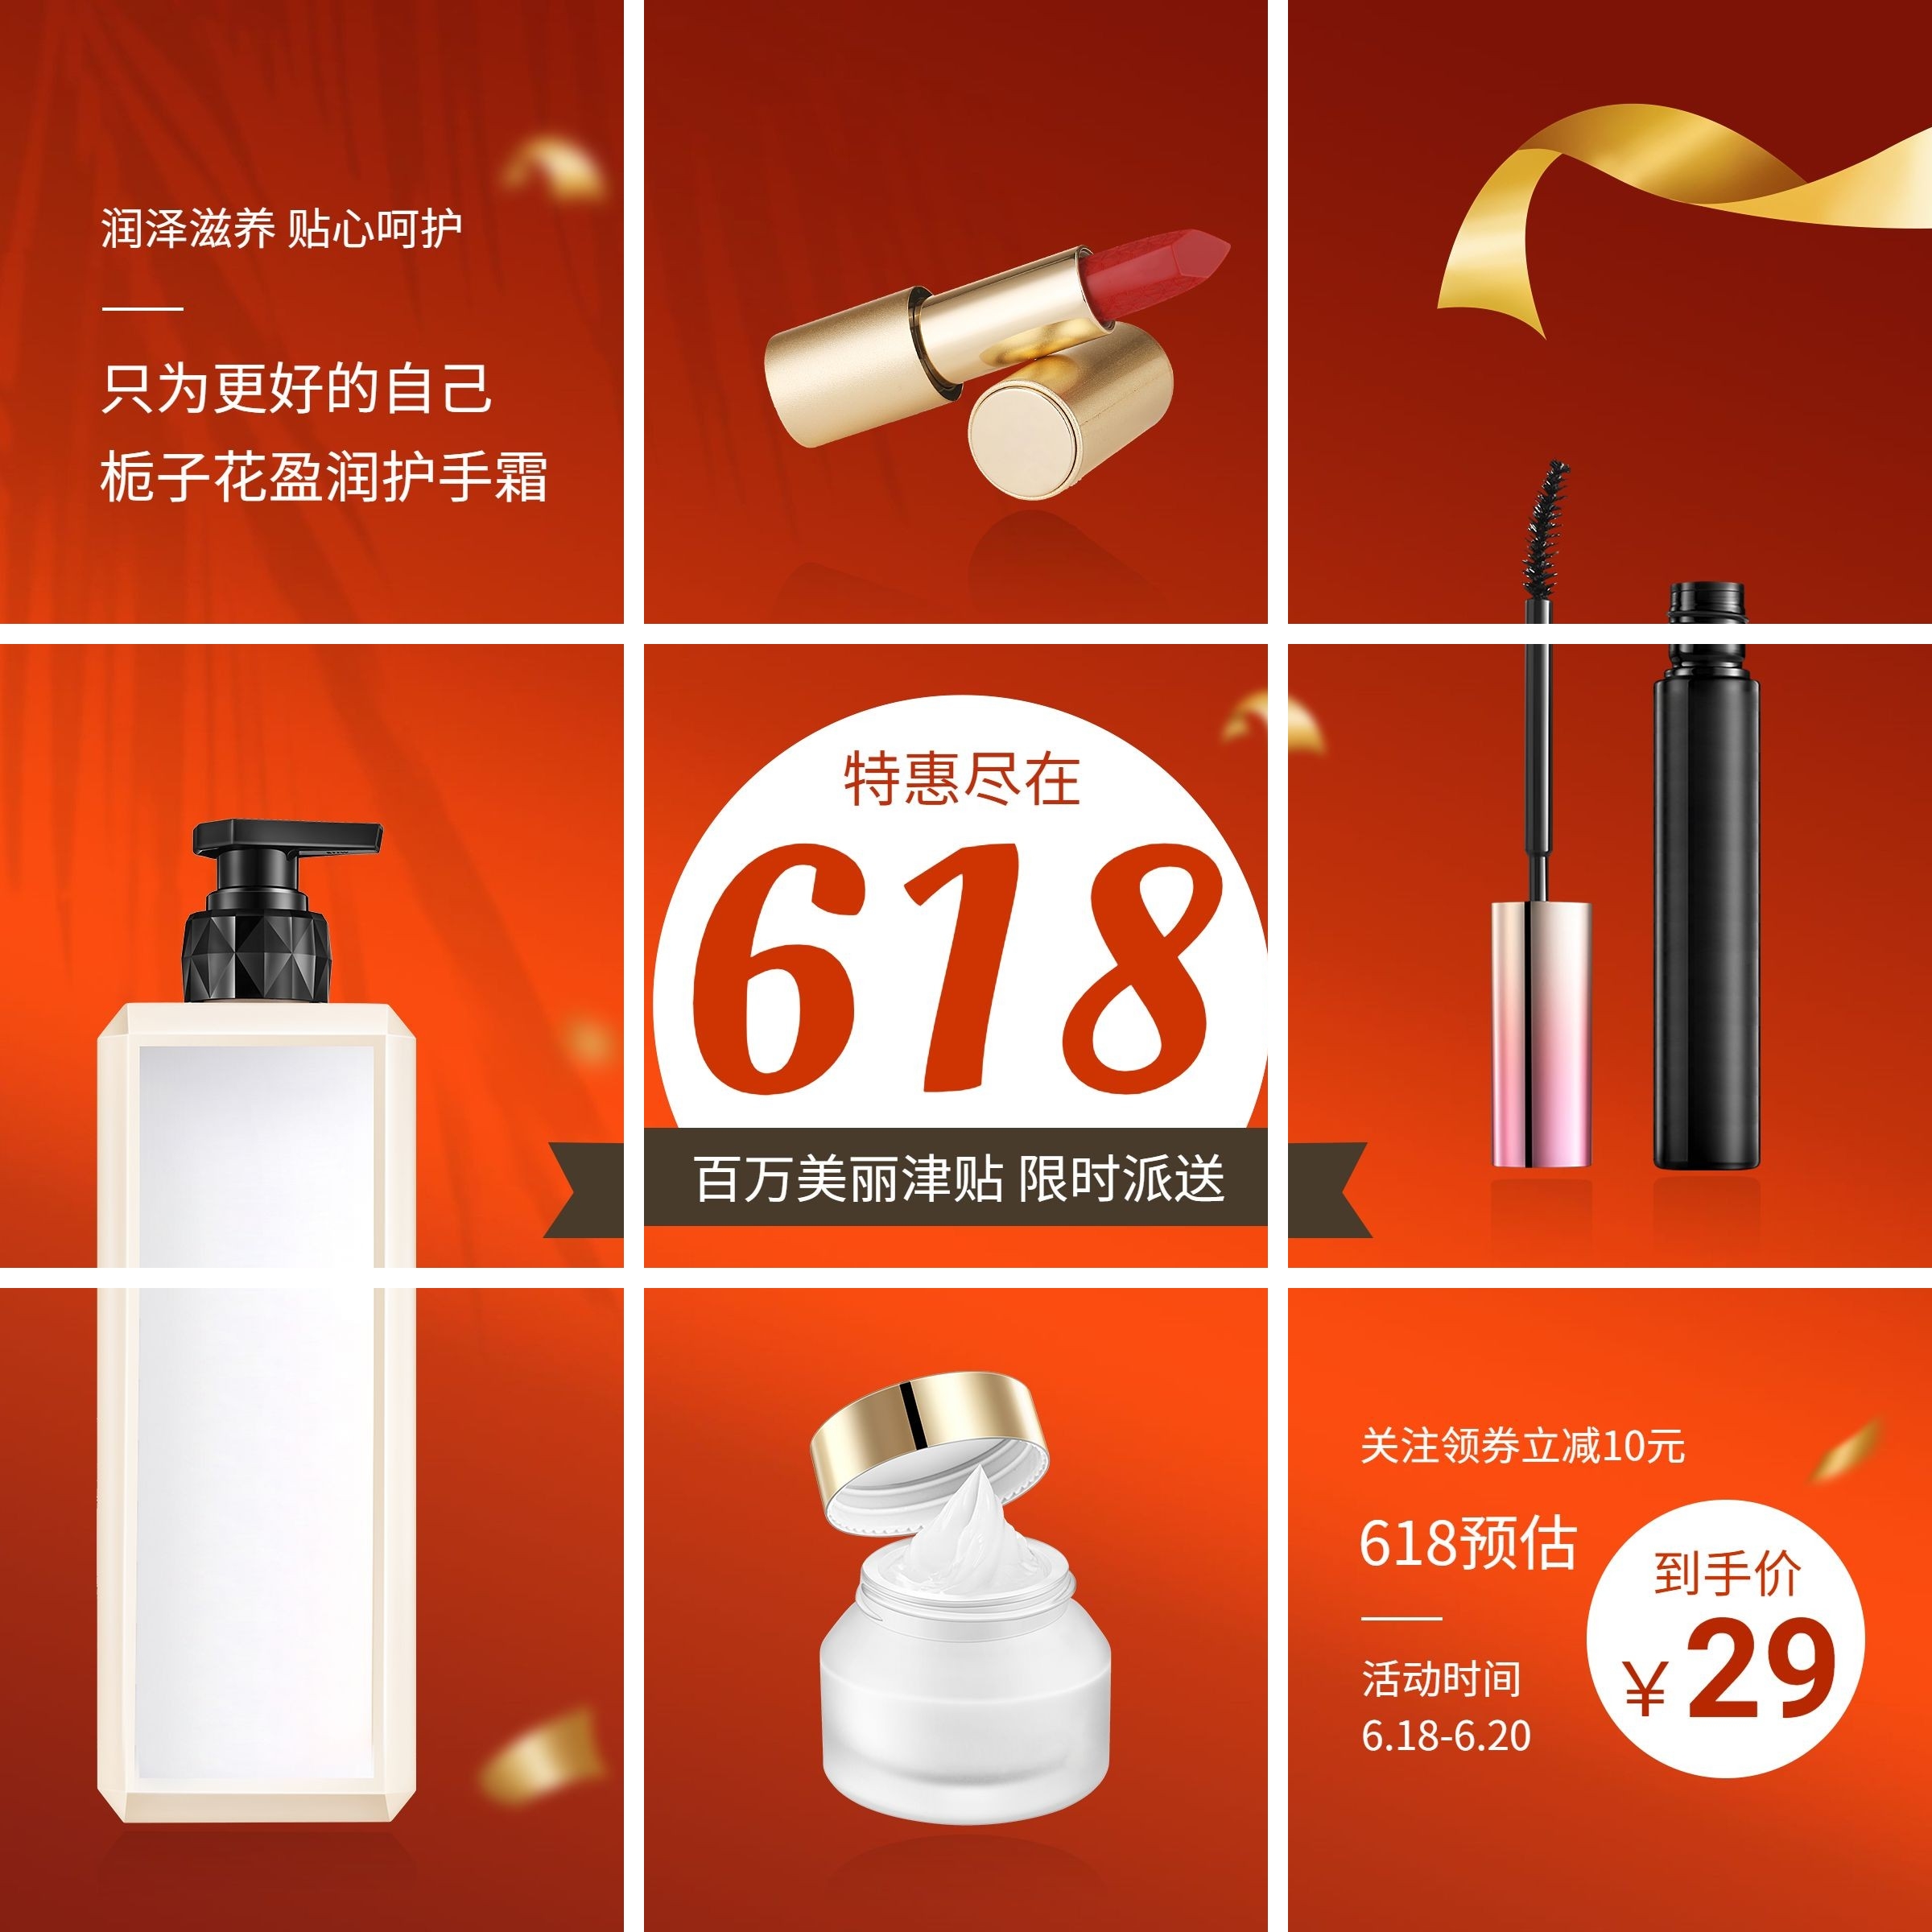 618美容美妆产品营销九宫格预览效果